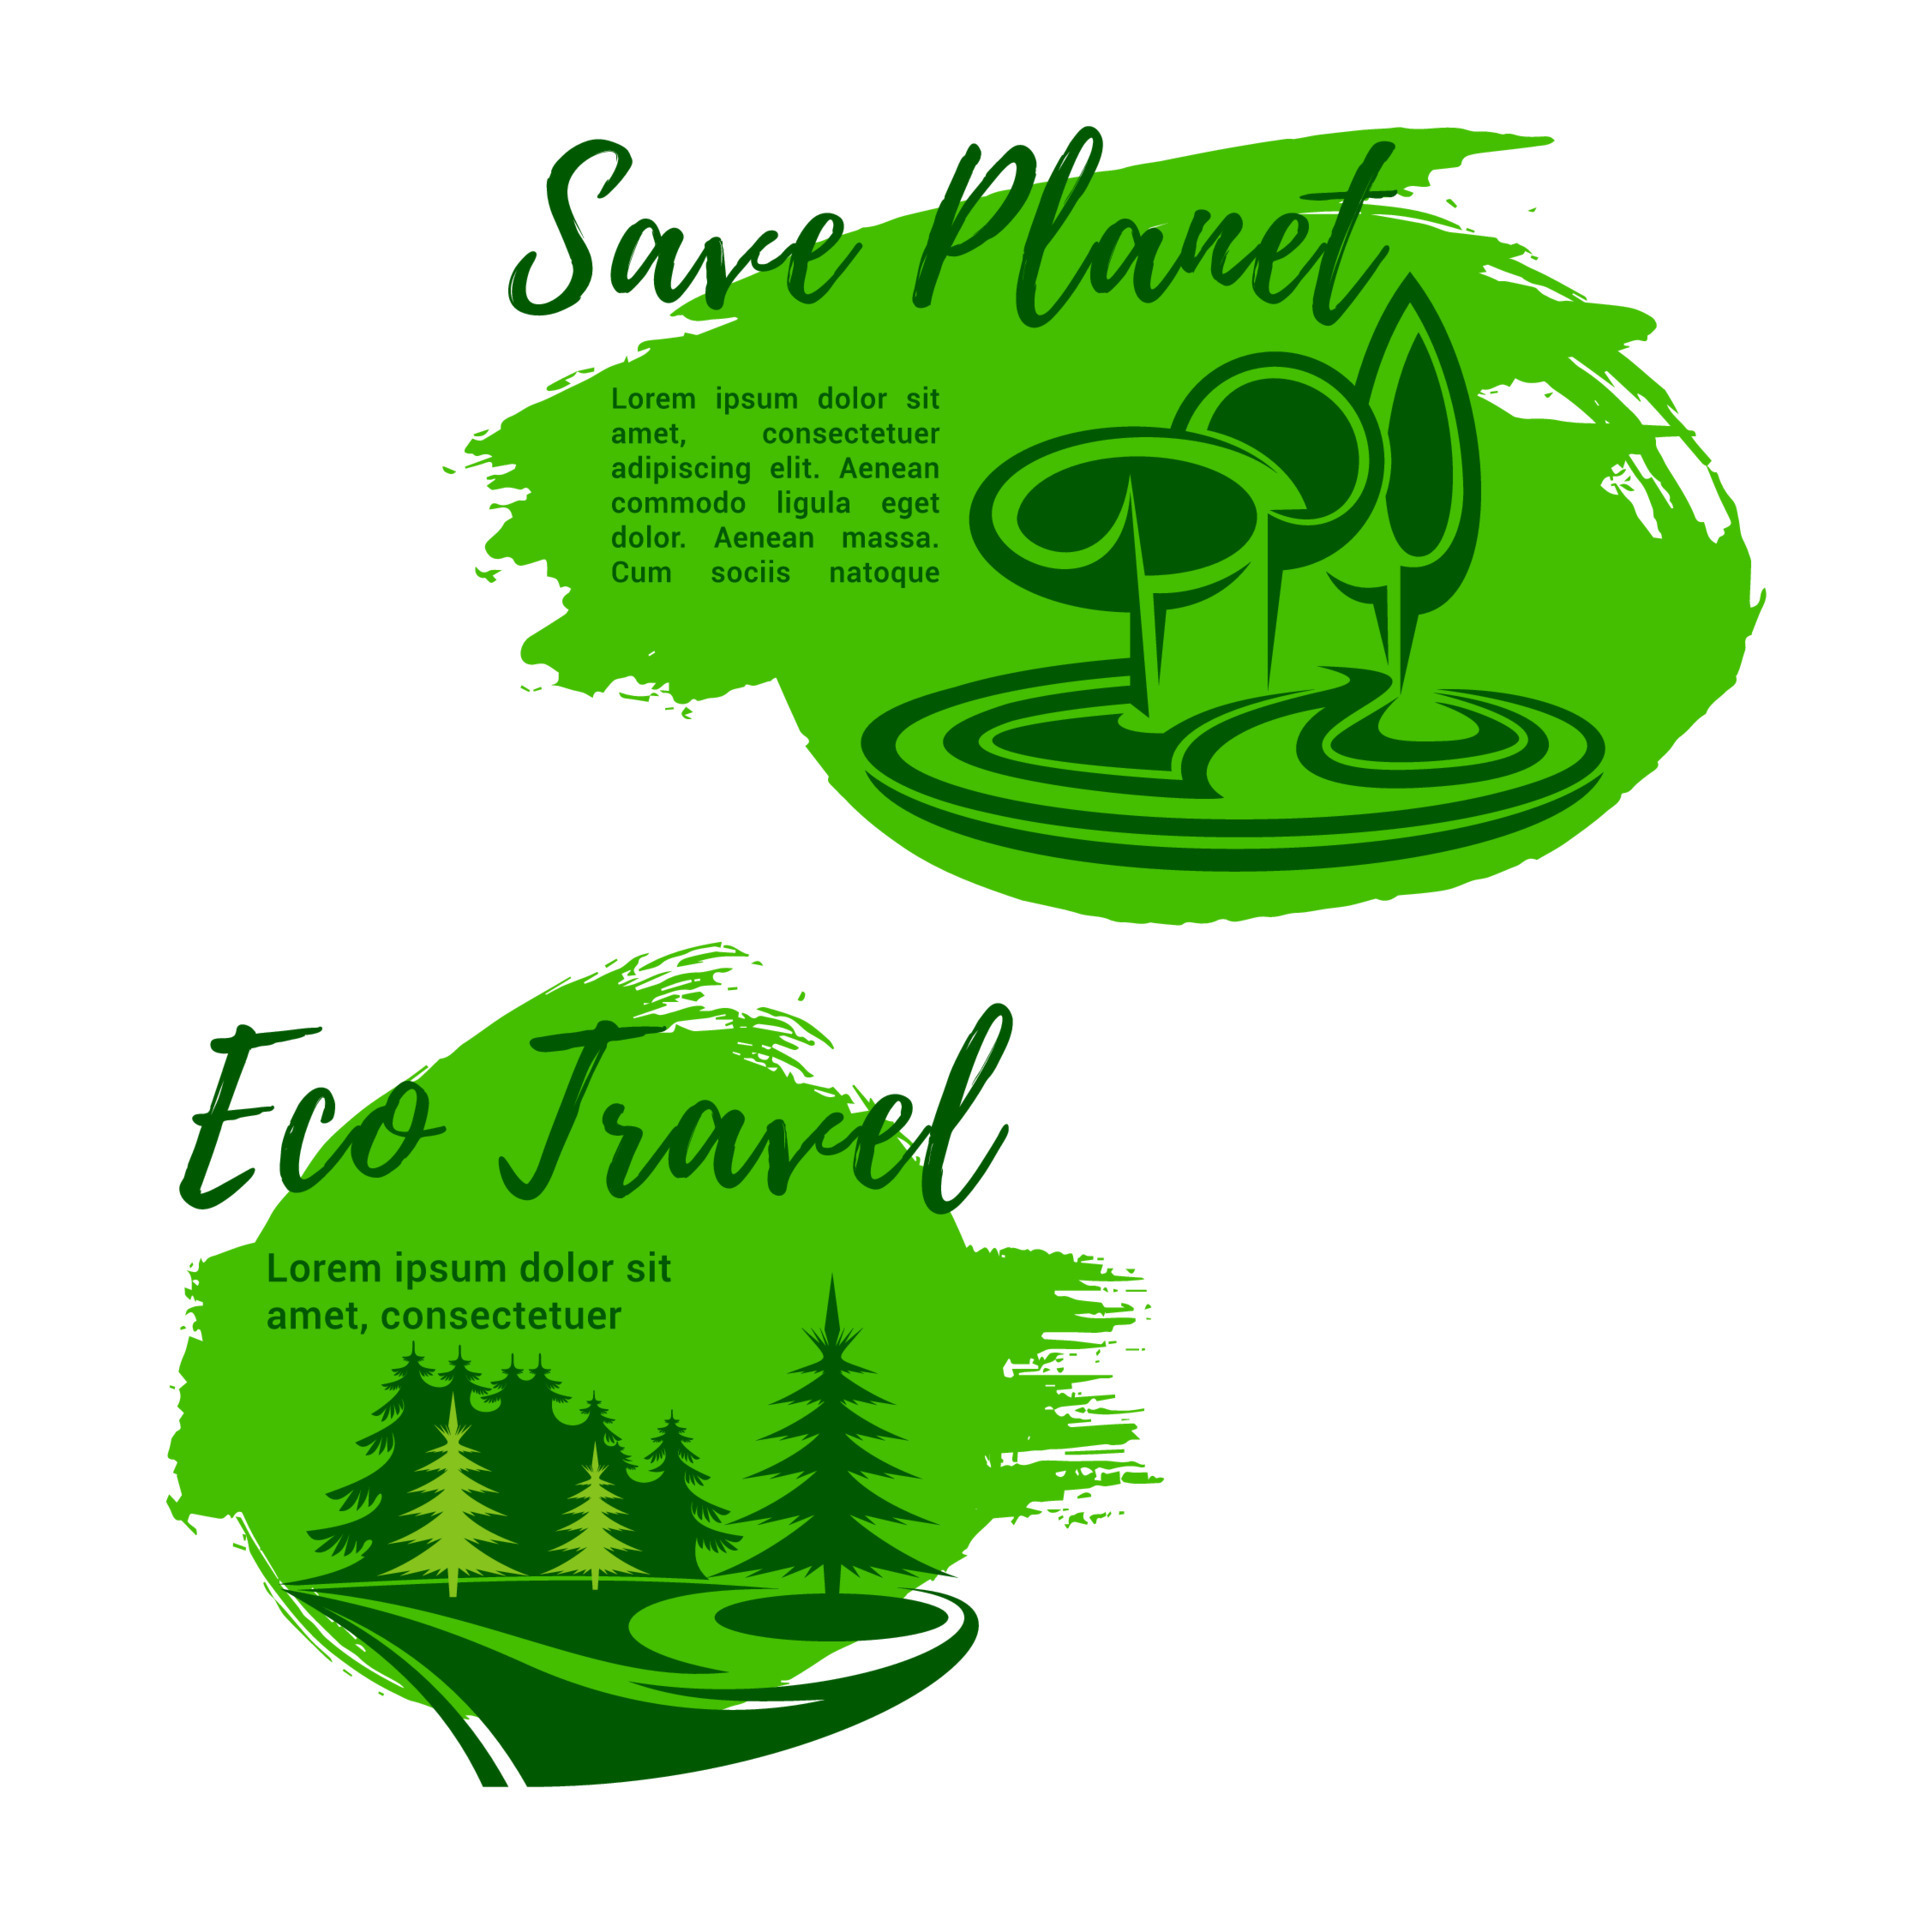 Green travel. Плакат эко похода. Эко путешествие. Логотип сохранения природы. Eco Travel logo.